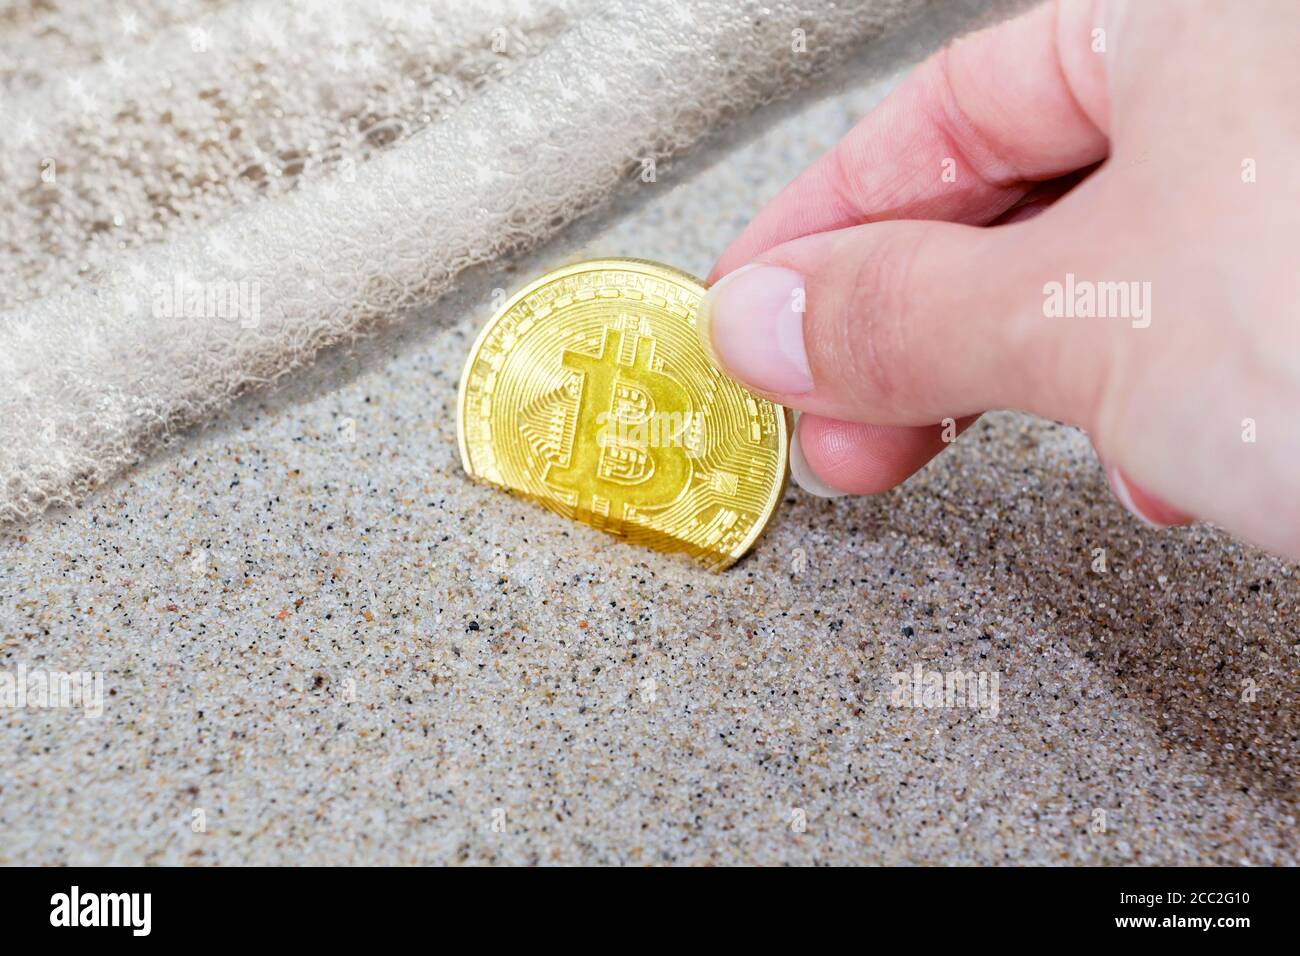 le bitcoin de pièce est enterré dans le sable et près de la vague de la mer. Bitcoin est la crypto-monnaie la plus populaire au monde. Banque D'Images